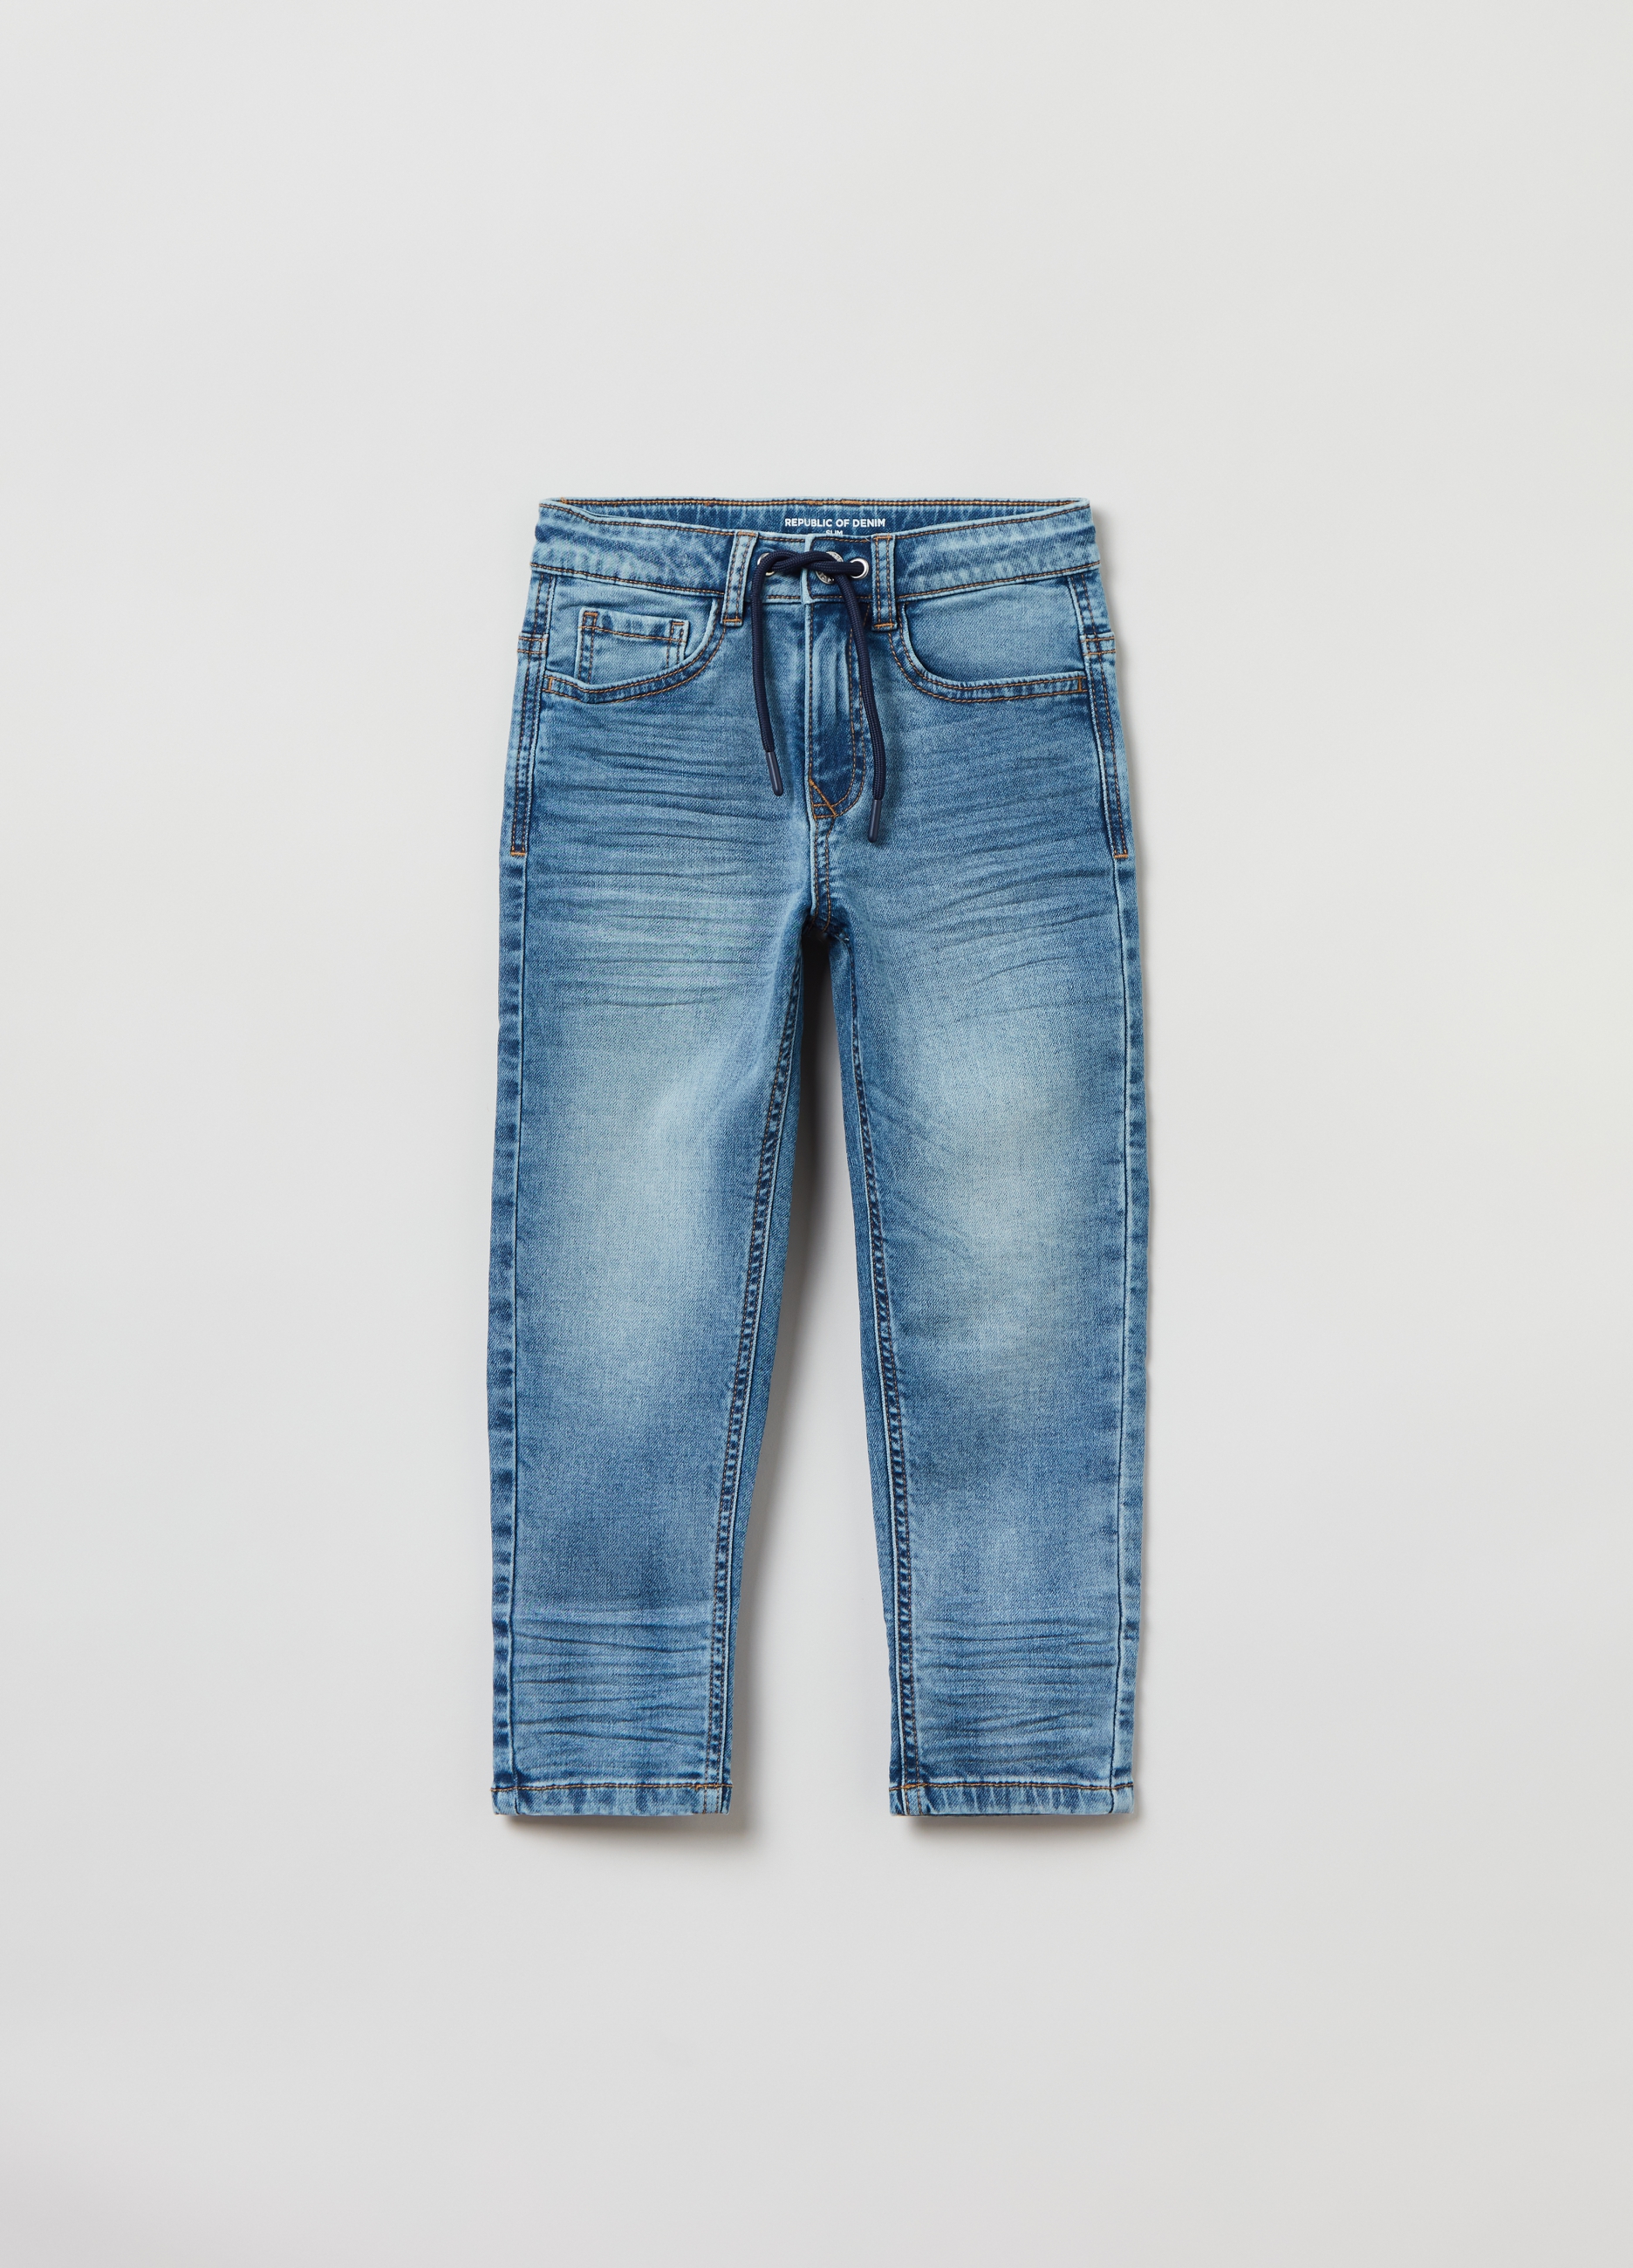 Джинсы OVS для мальчиков, голубые, 5-6 лет, 1823572 джинсы ovs для мальчиков голубые 7 8 лет 1823572